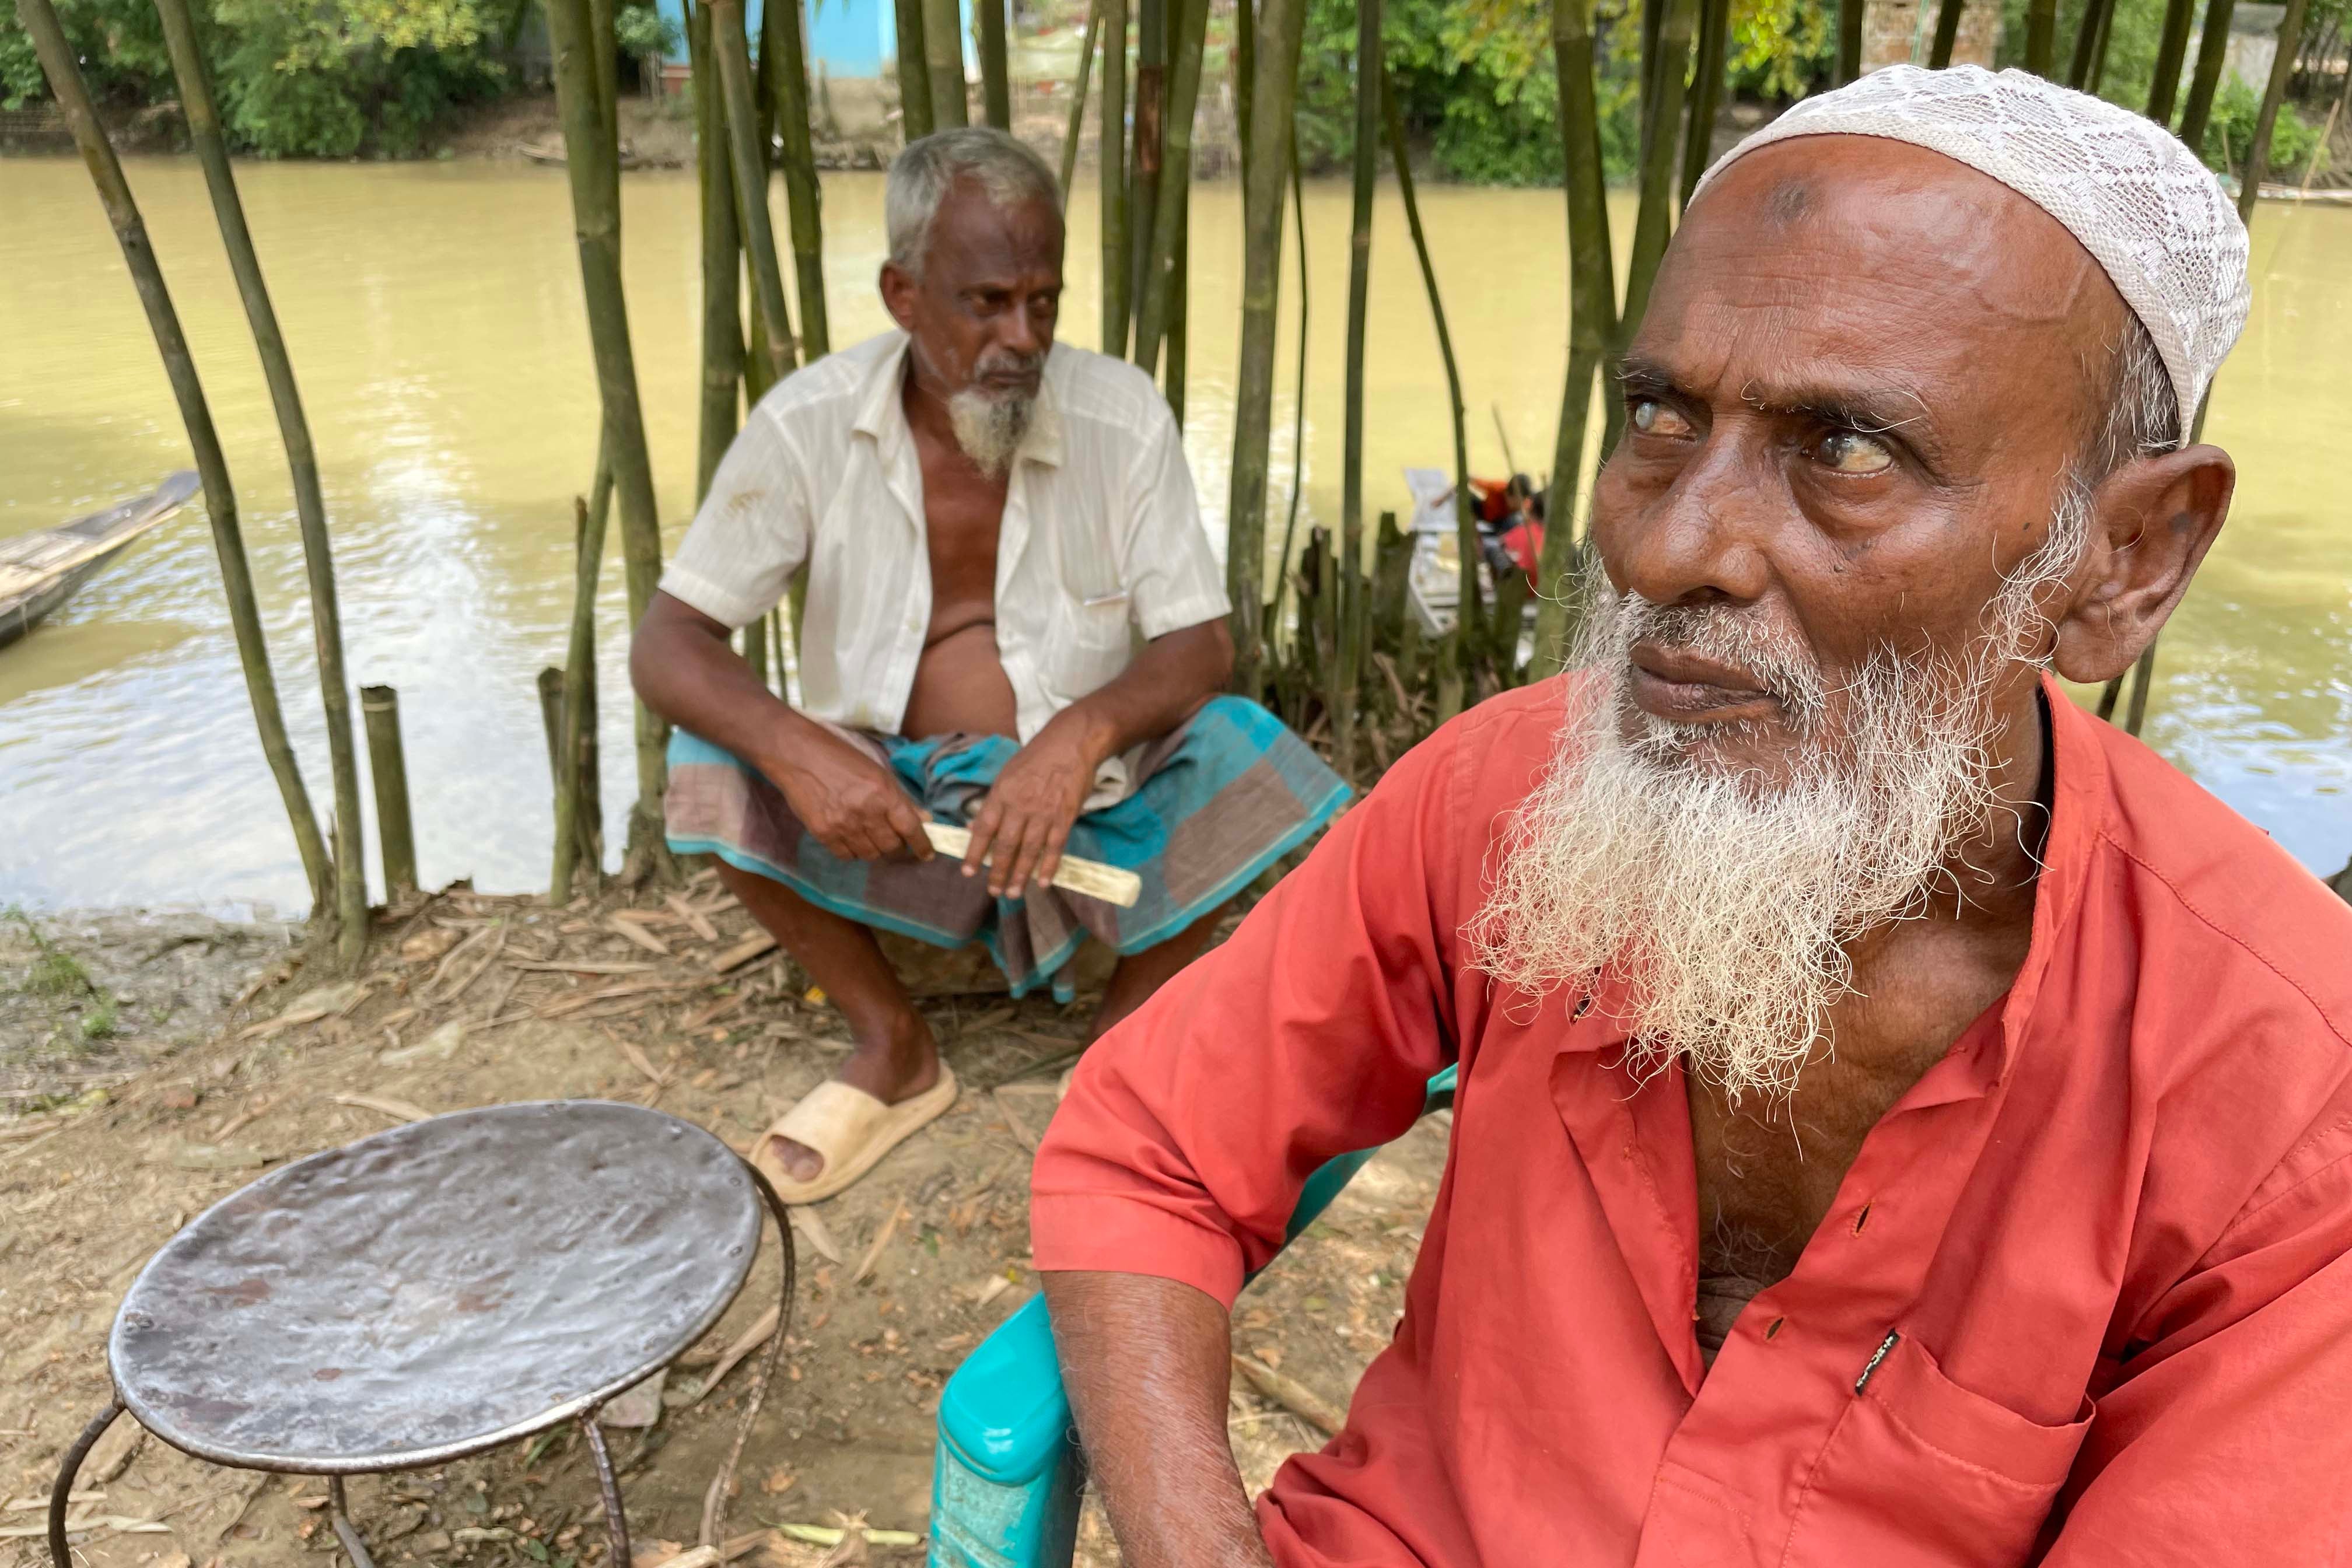 Two older men sit near a river